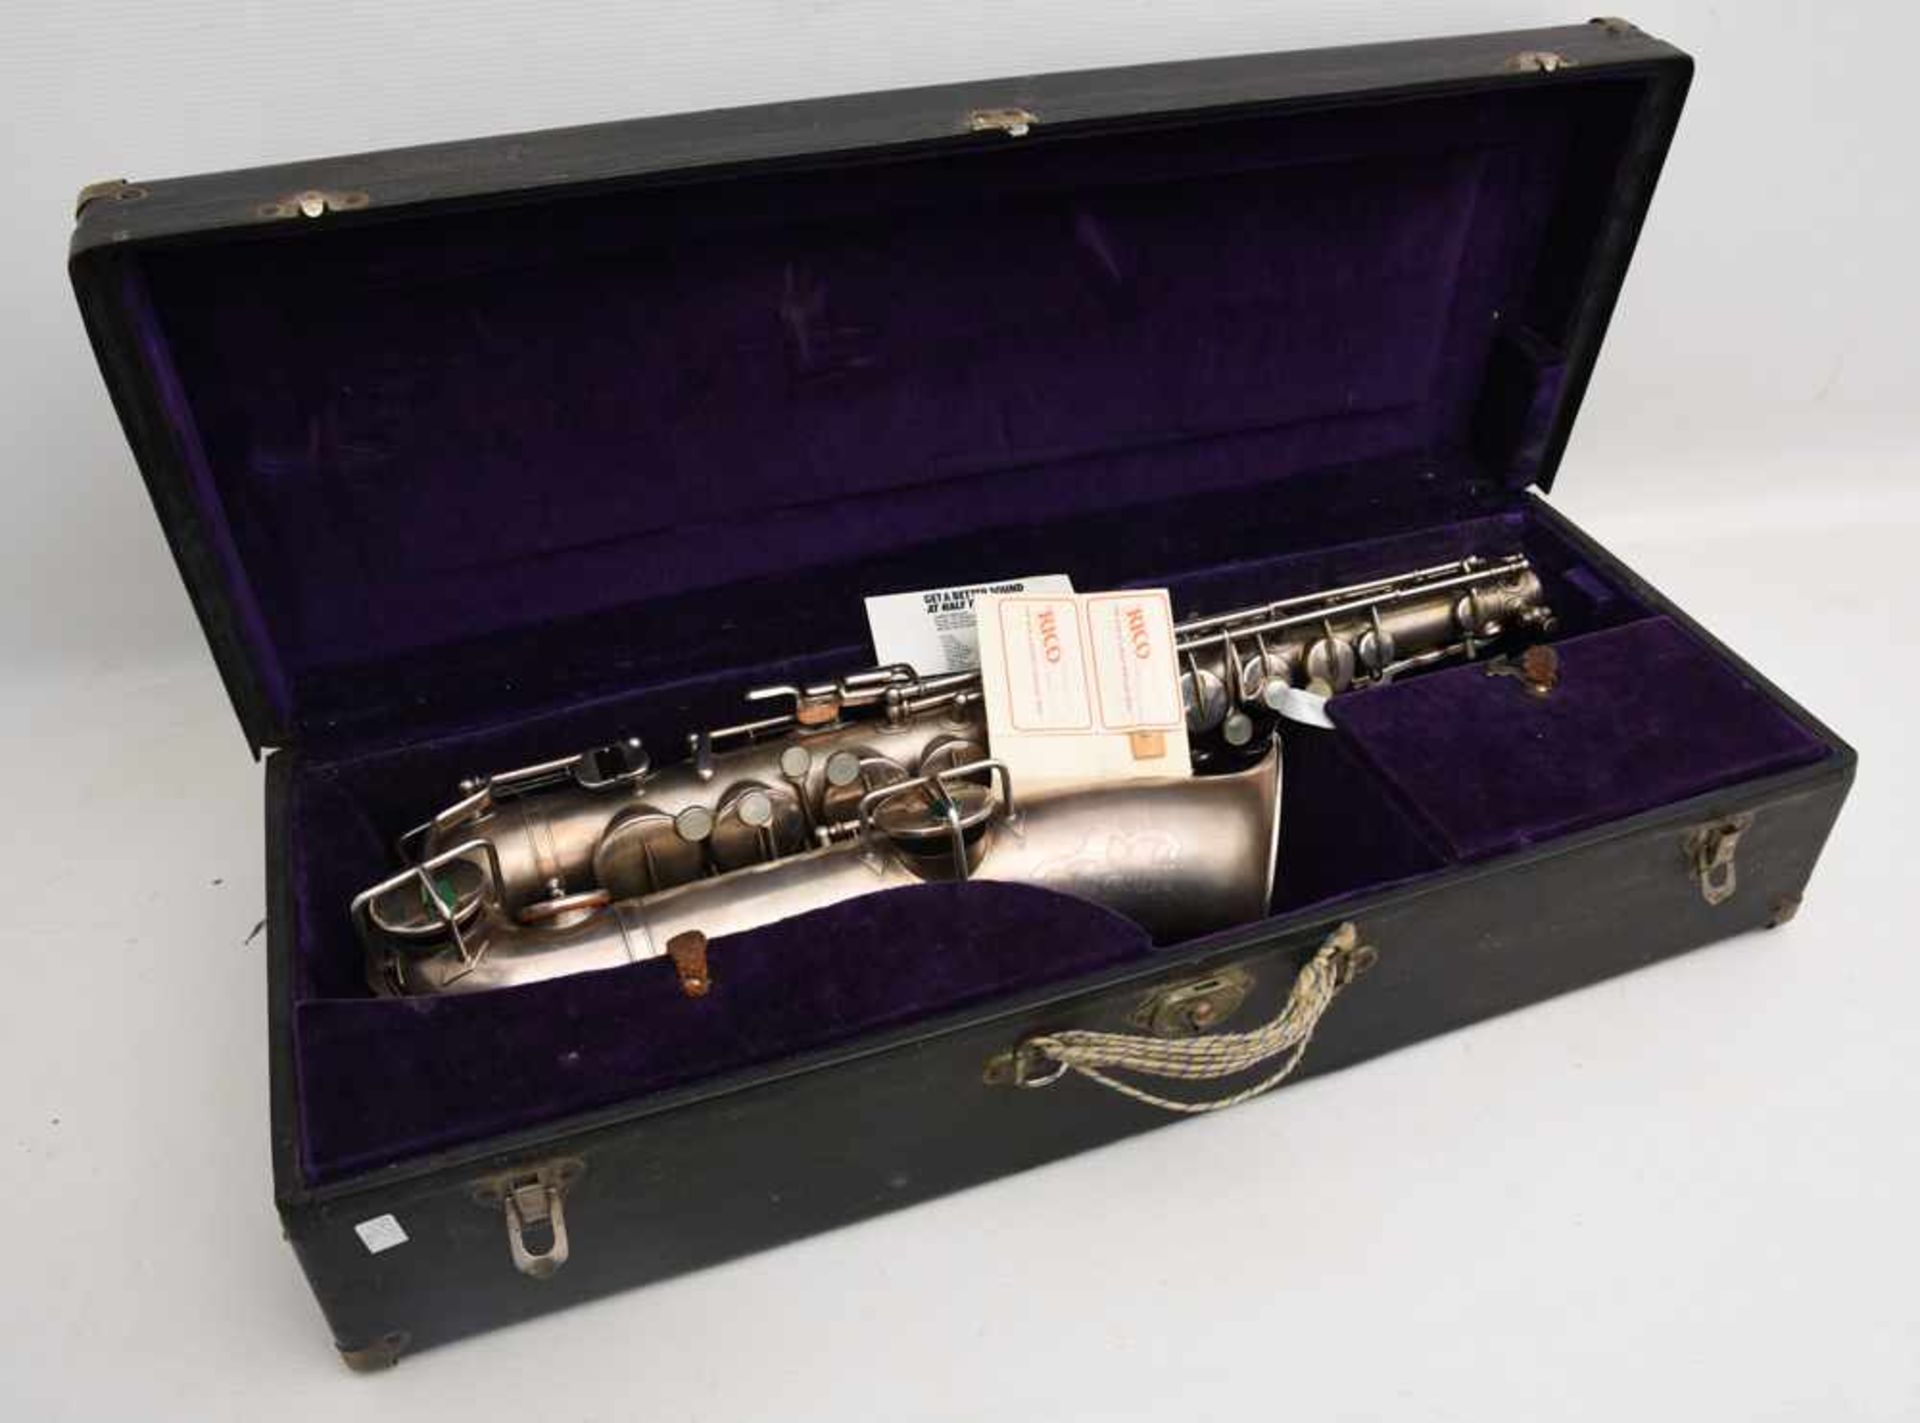 SAXOPHONE MIT KASTEN UND ZUBEHÖR, bez. "the buescher elkhart ind saxophone" nummeriert 163912. d. 12 - Bild 5 aus 9